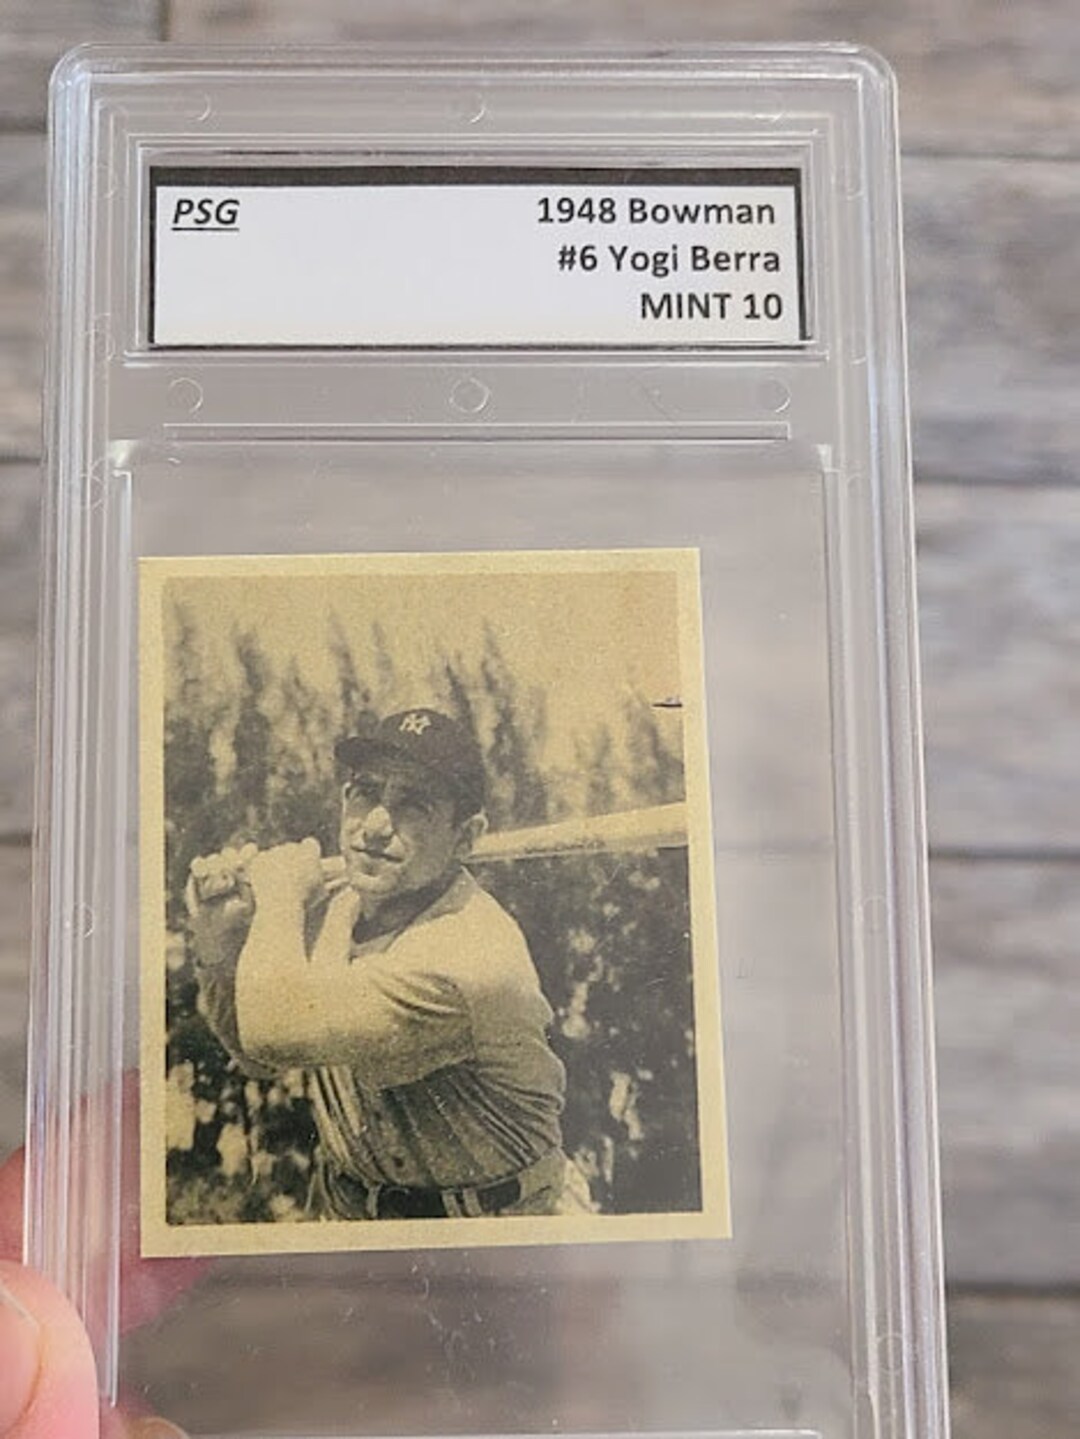 Graded Honus Wagner 1909 T206 Custom Remake Baseball Card -  Sweden